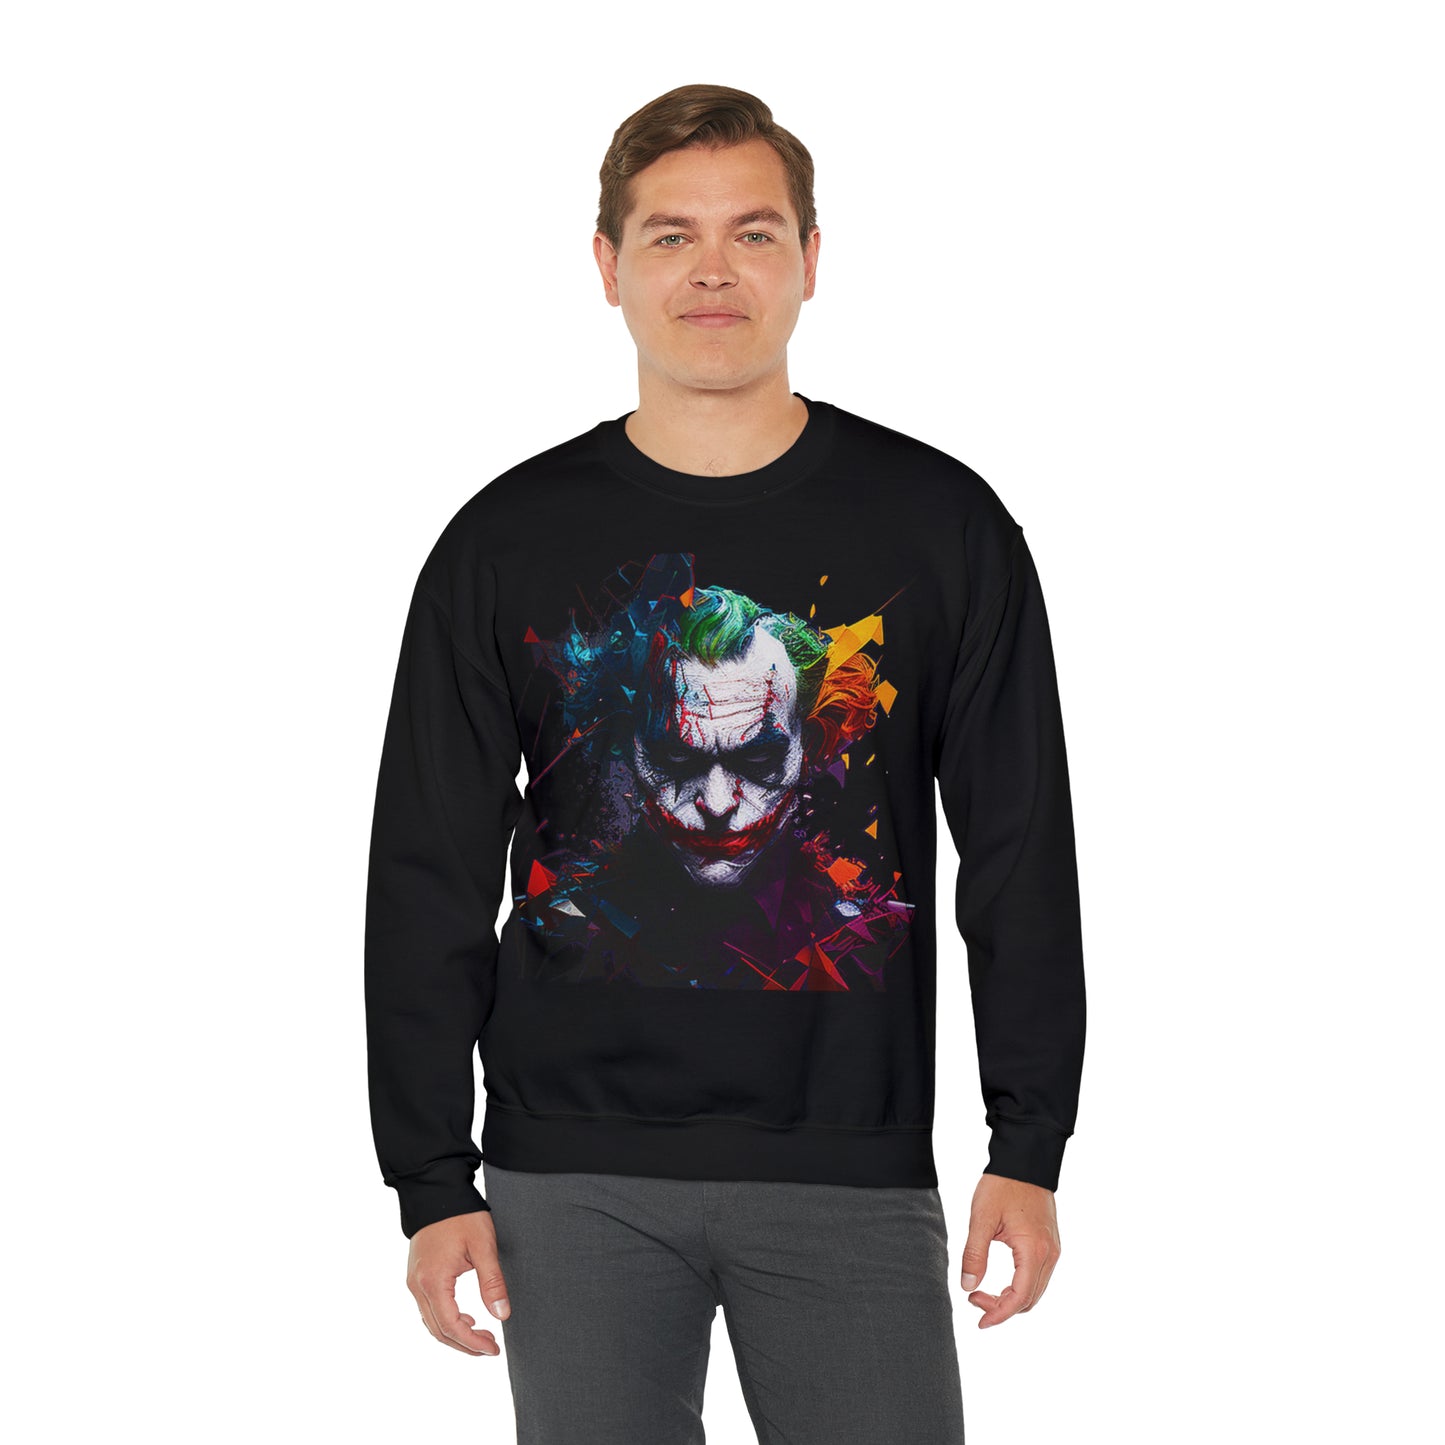 Joker, Batman, Women's and Men's Unisex, Crew Neck Sweatshirt